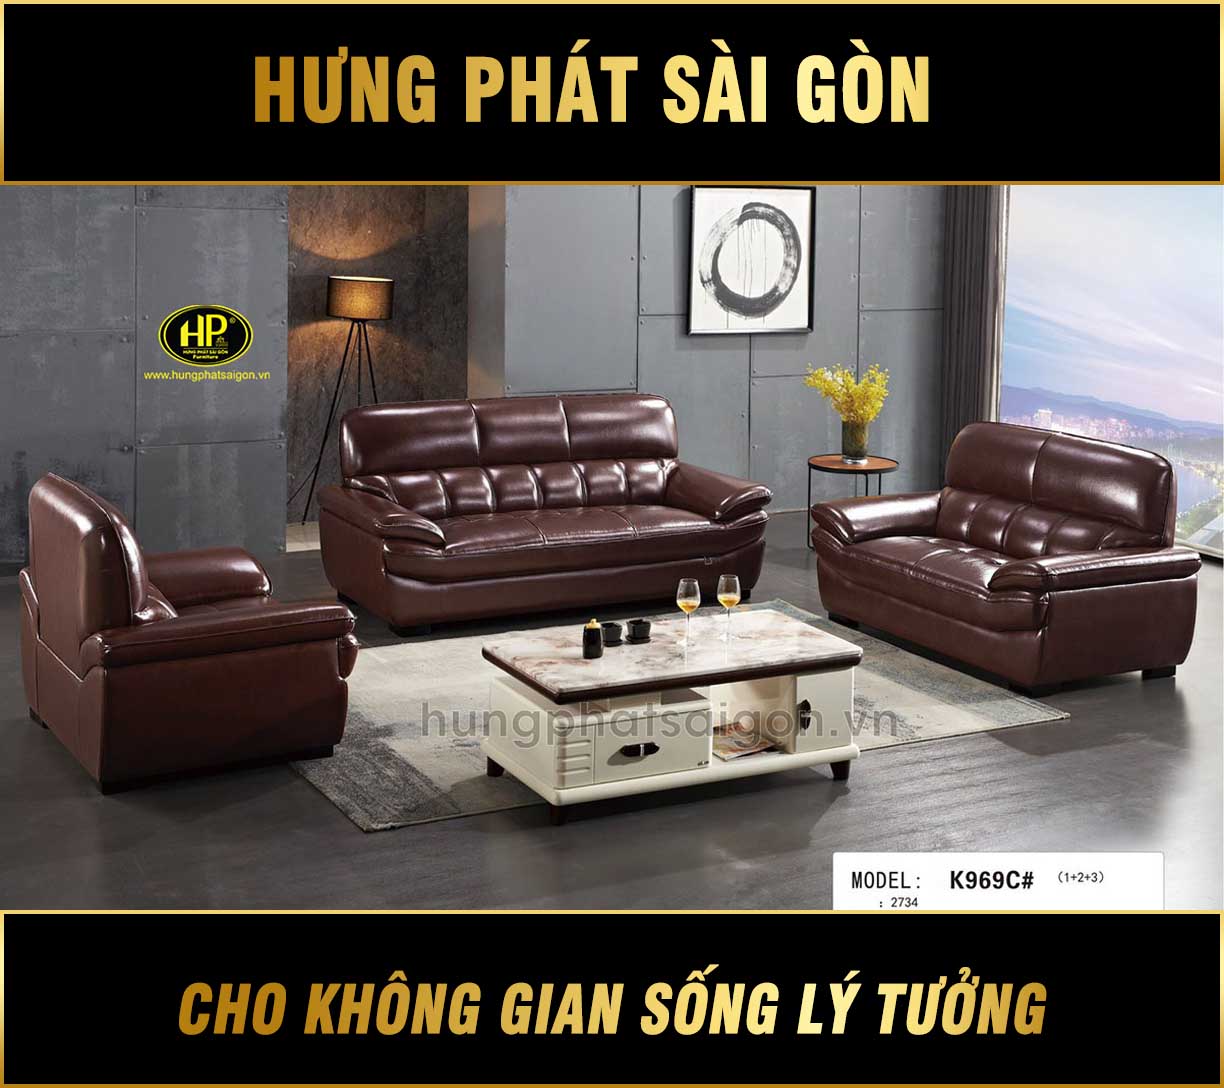 Bộ 3 ghế sofa nhập khẩu hiện đại NK-K969C